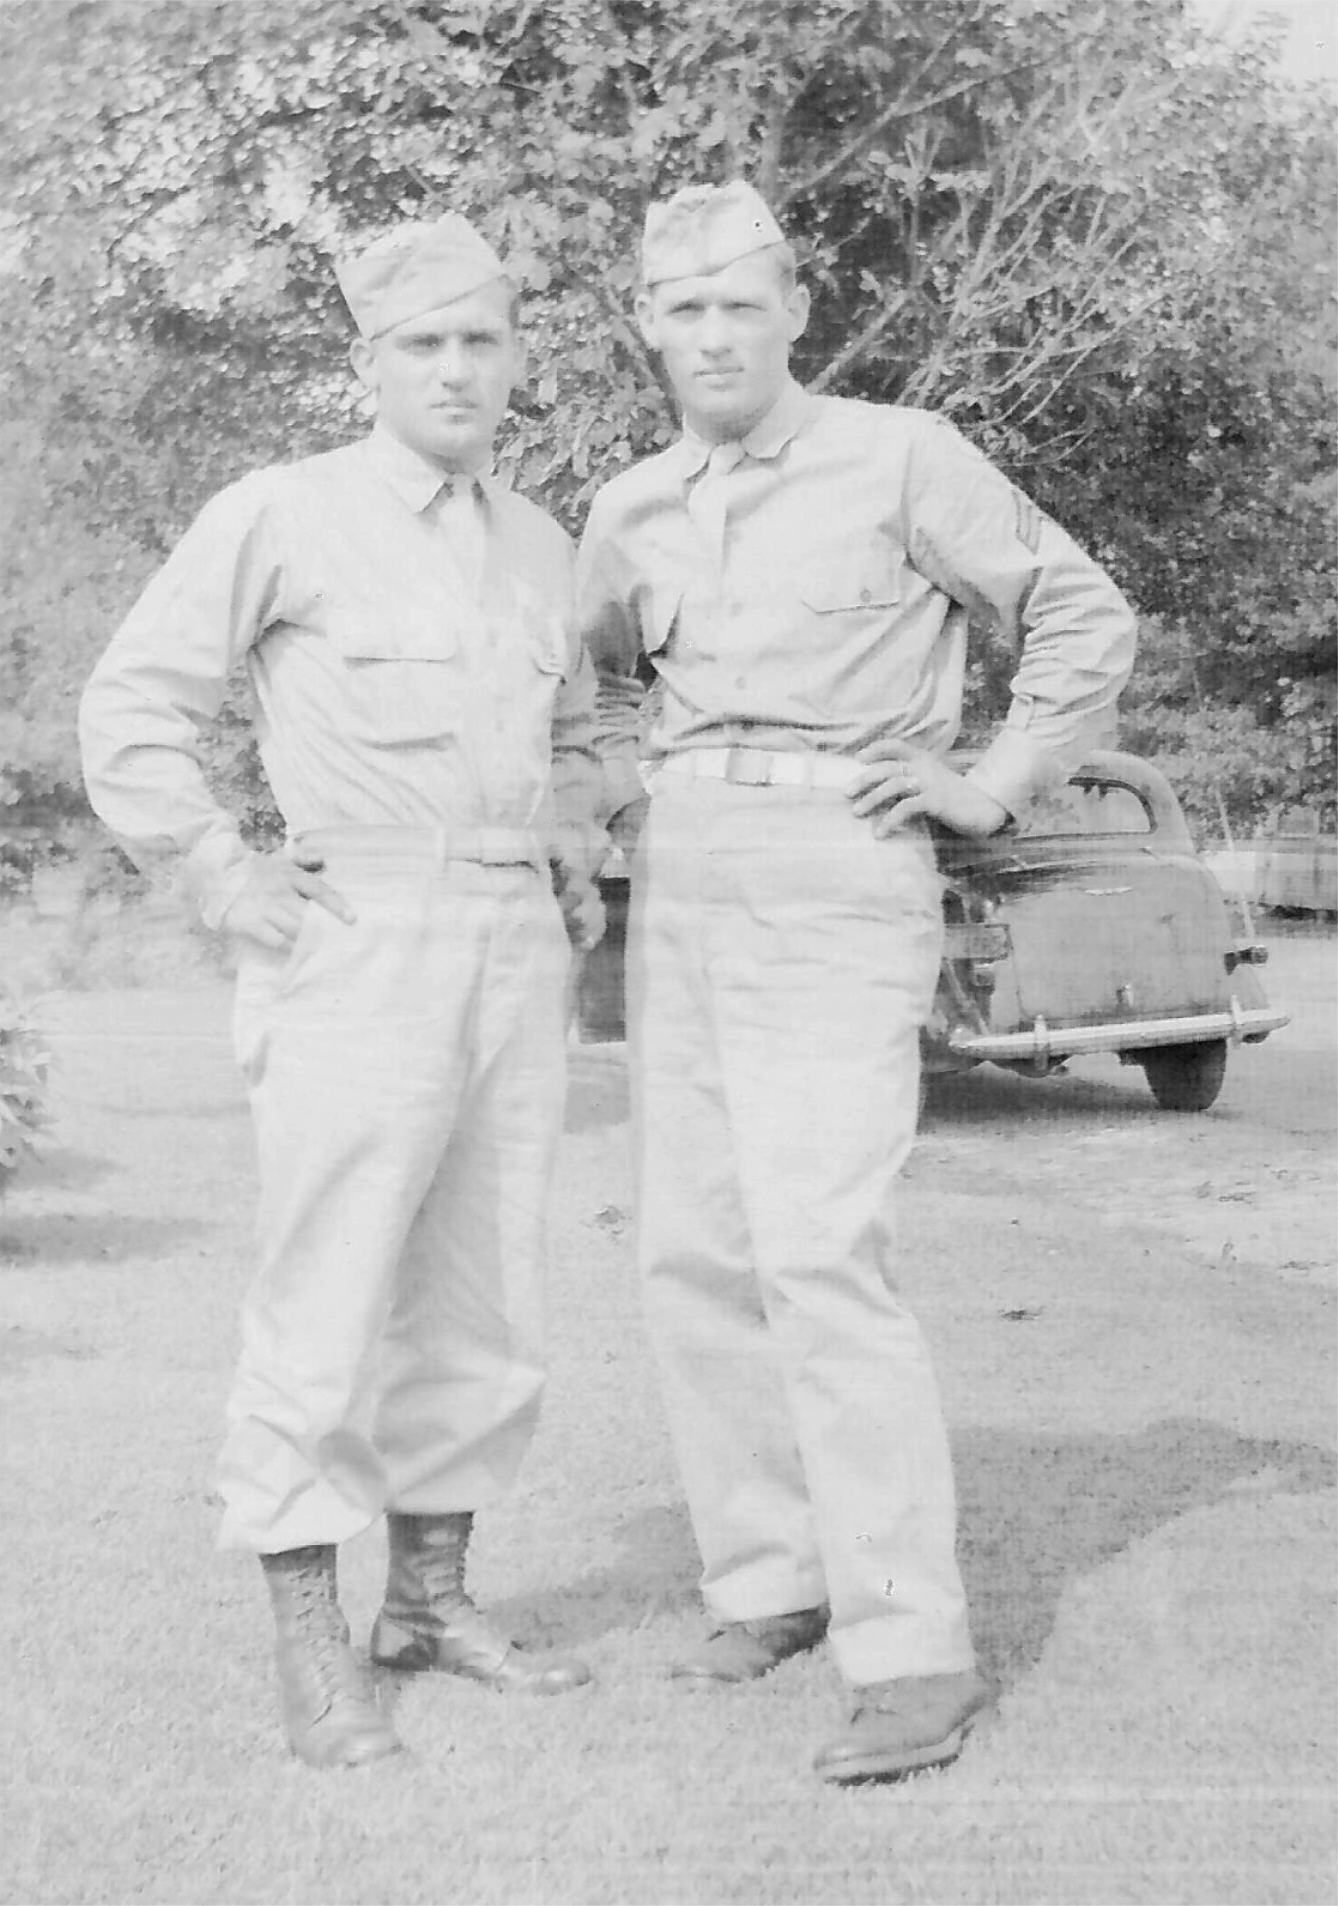 Frank and John Gabersek 1943